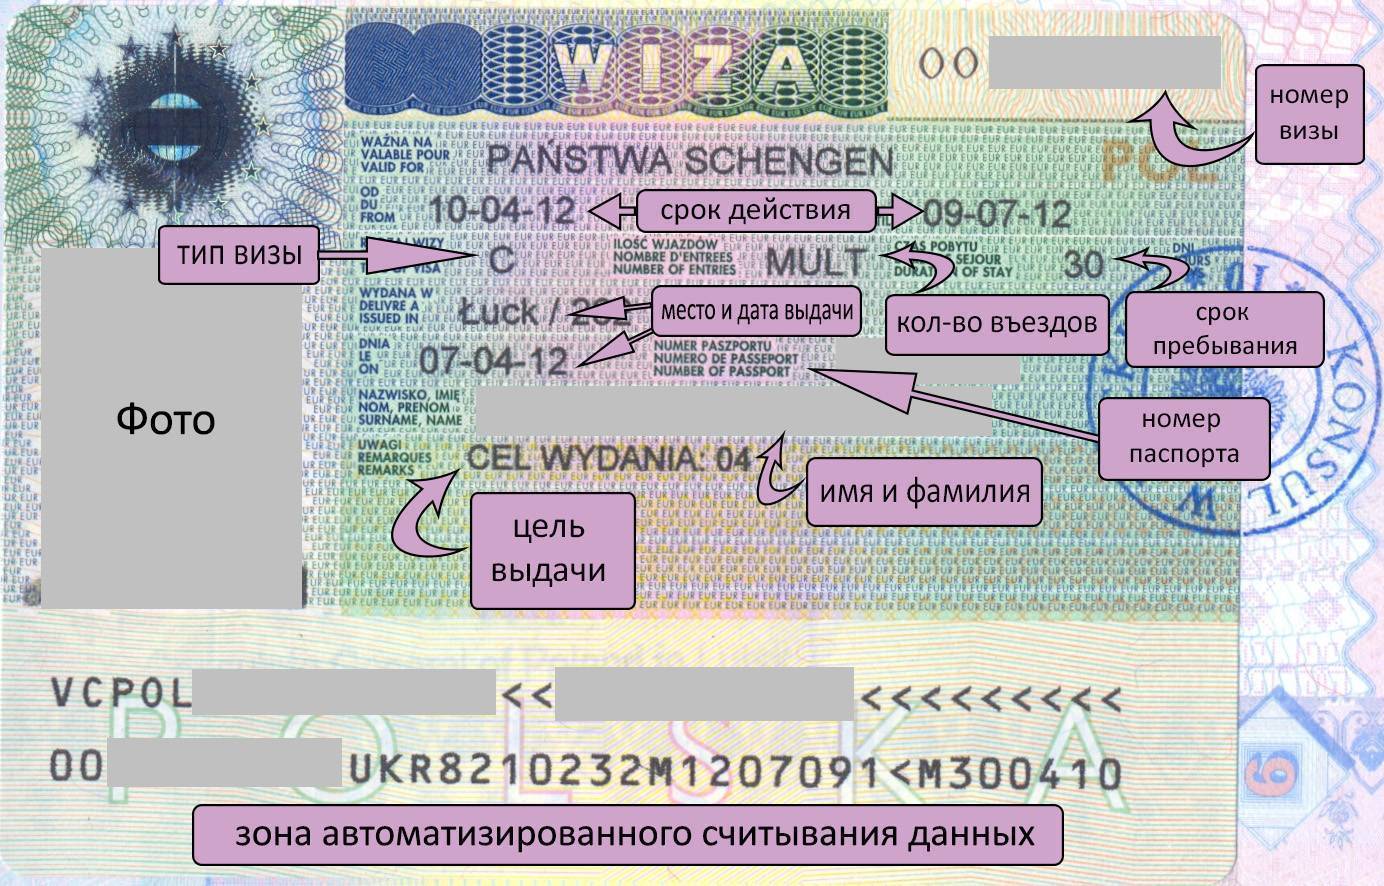 Как подать заявление на оформление шенгенской визы?